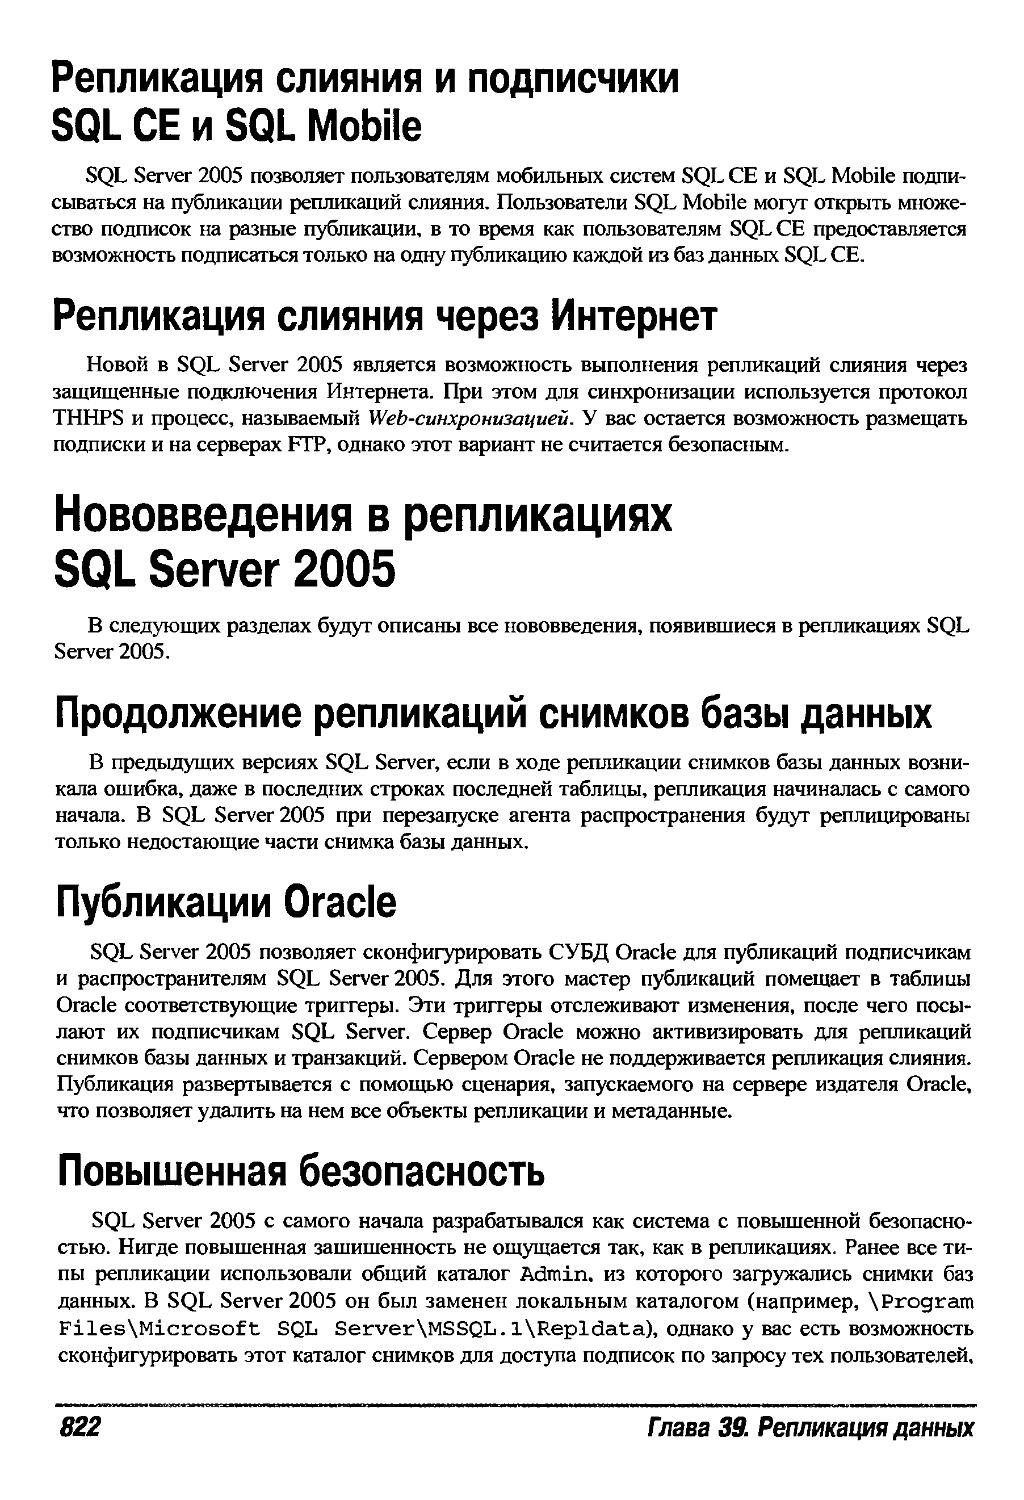 Нововведения в репликациях SQL Server 2005